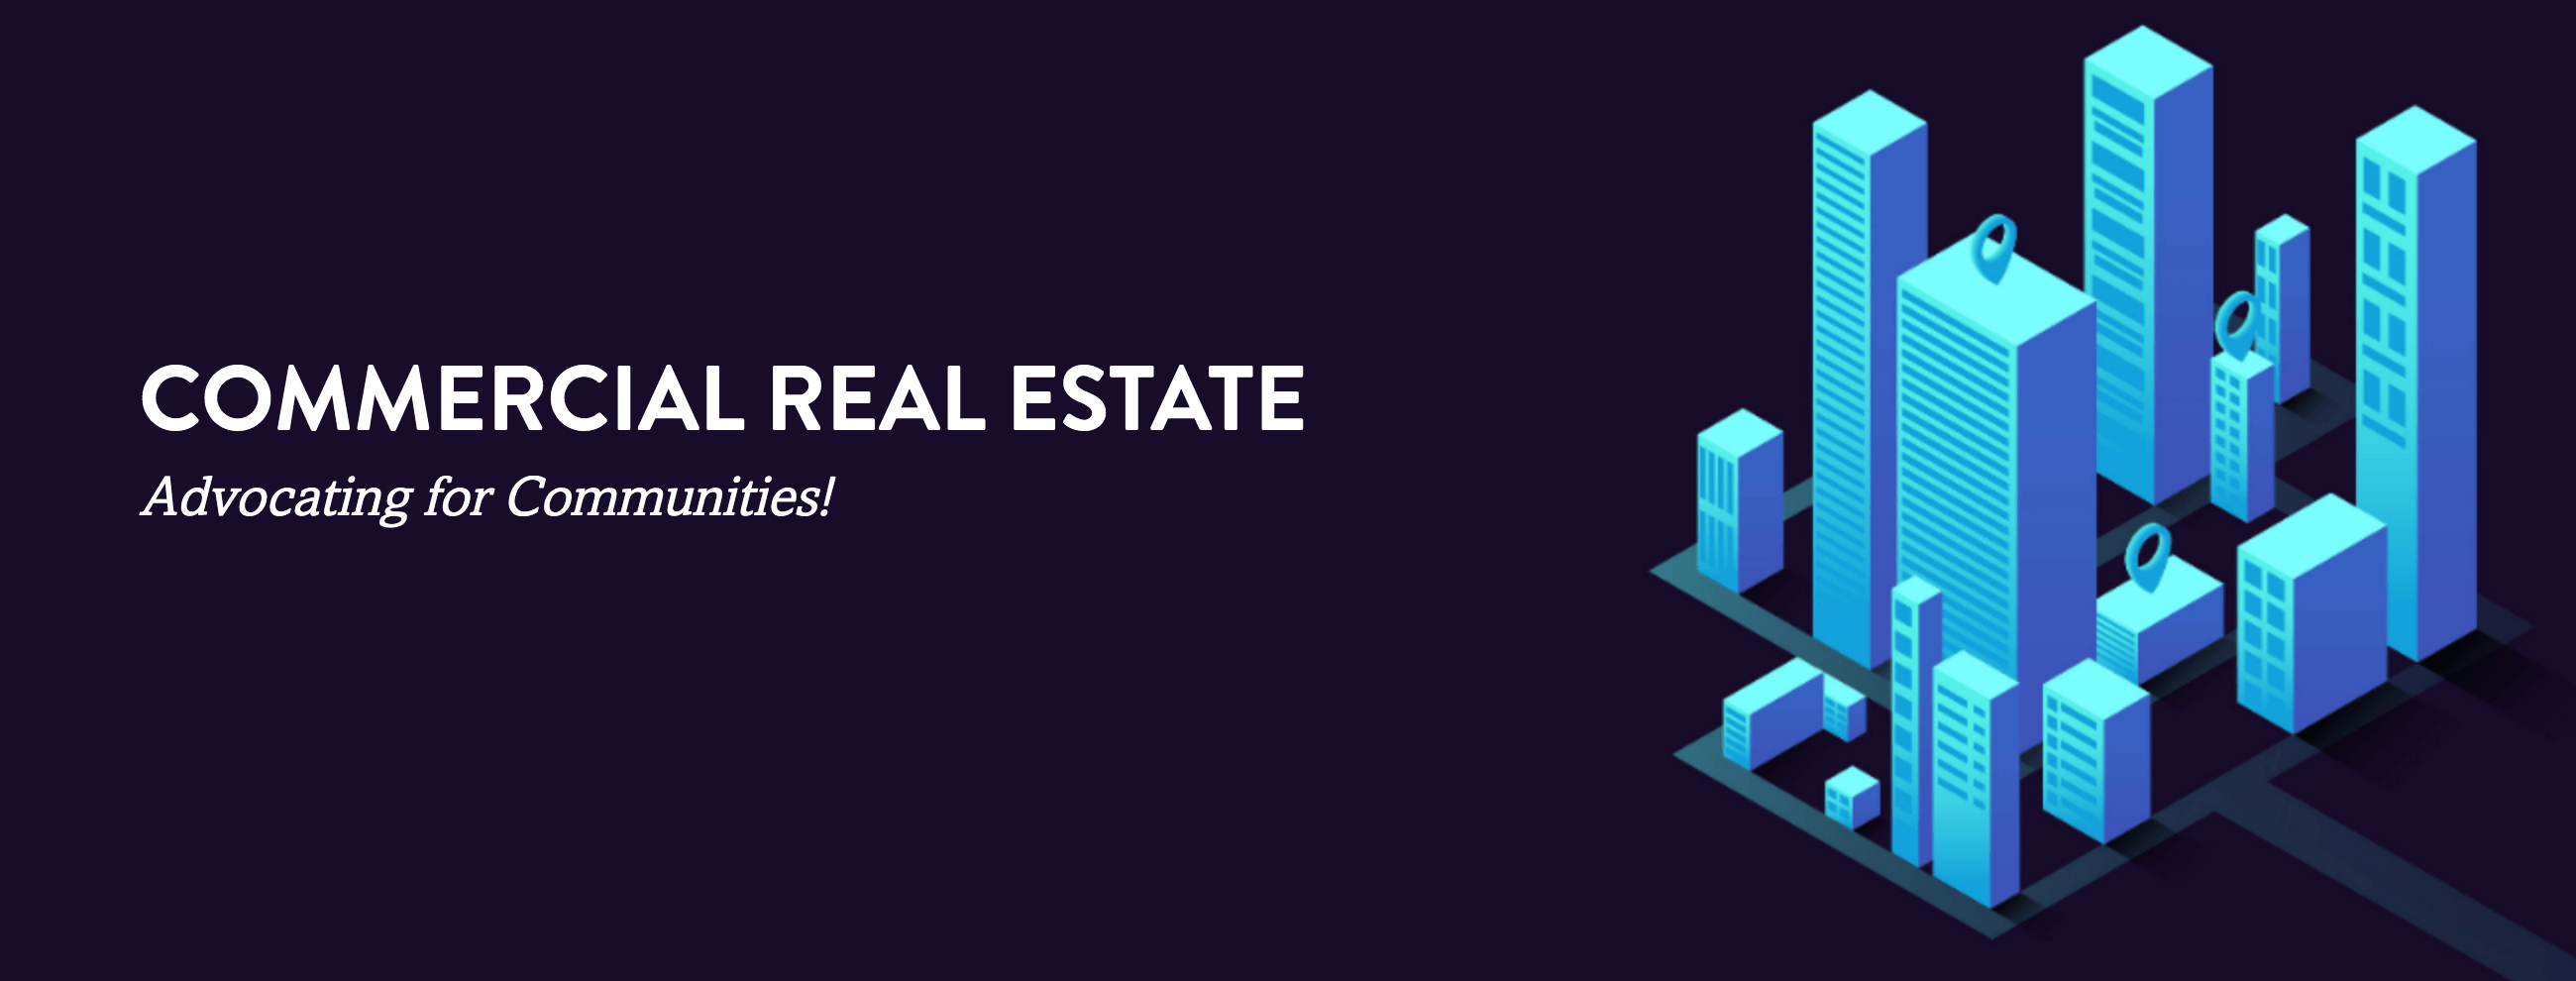 Commercial Real Estate Banner